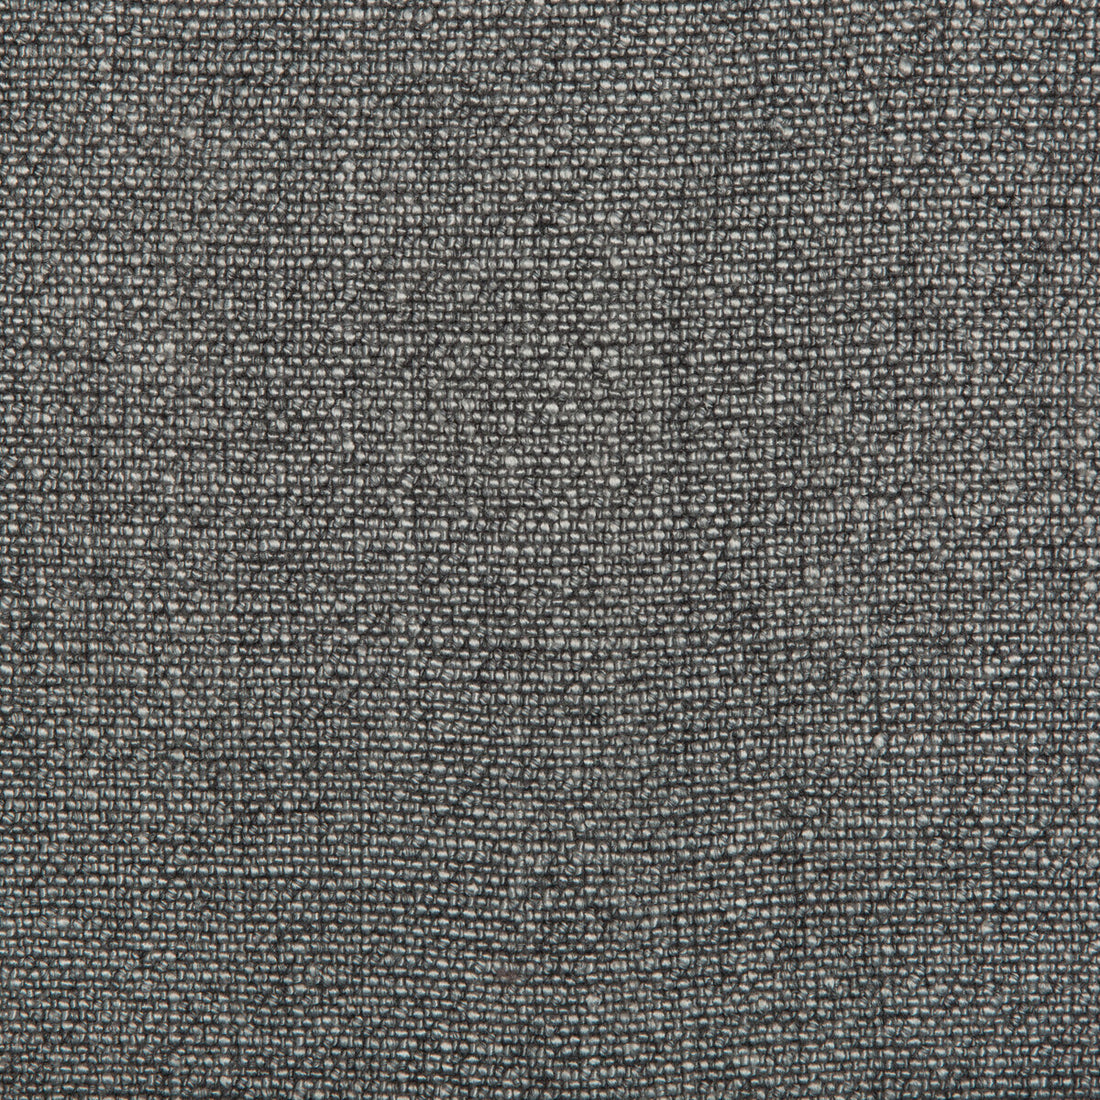 Kravet Basics fabric in 35189-21 color - pattern 35189.21.0 - by Kravet Basics